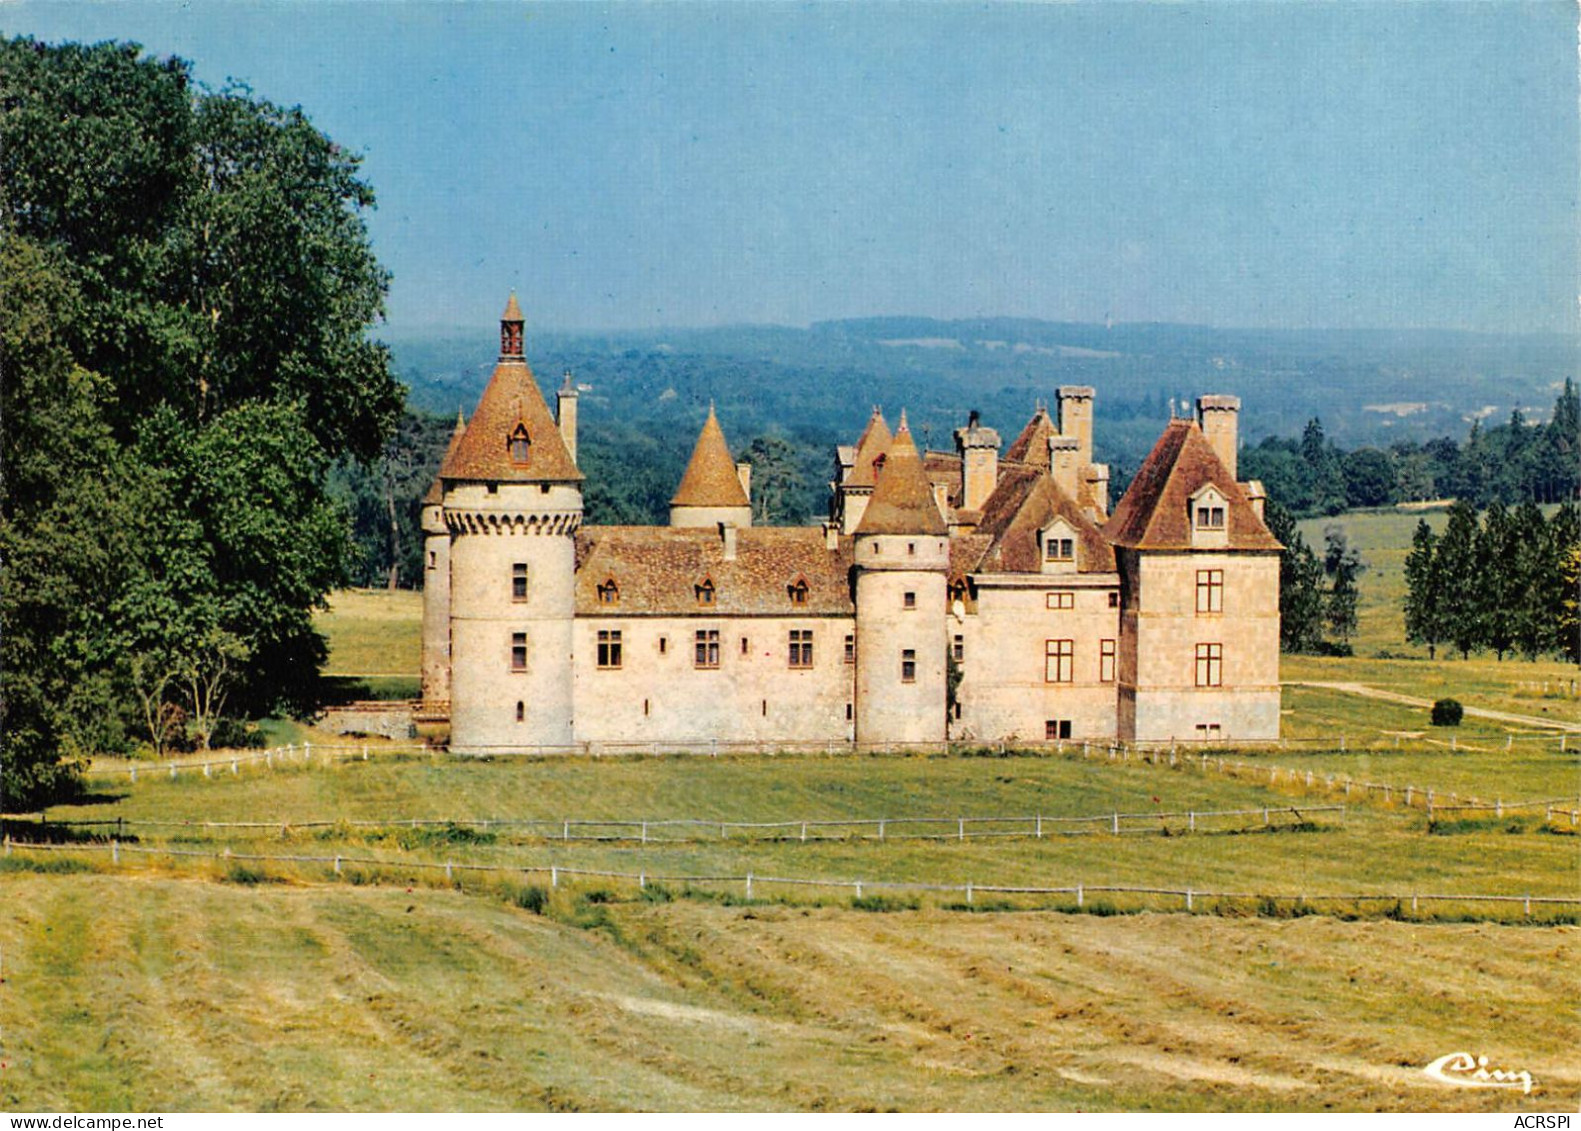 CASTELJALOUX Le Chateau Sendat    26 (scan Recto-verso)KEVREN9Bis - Casteljaloux